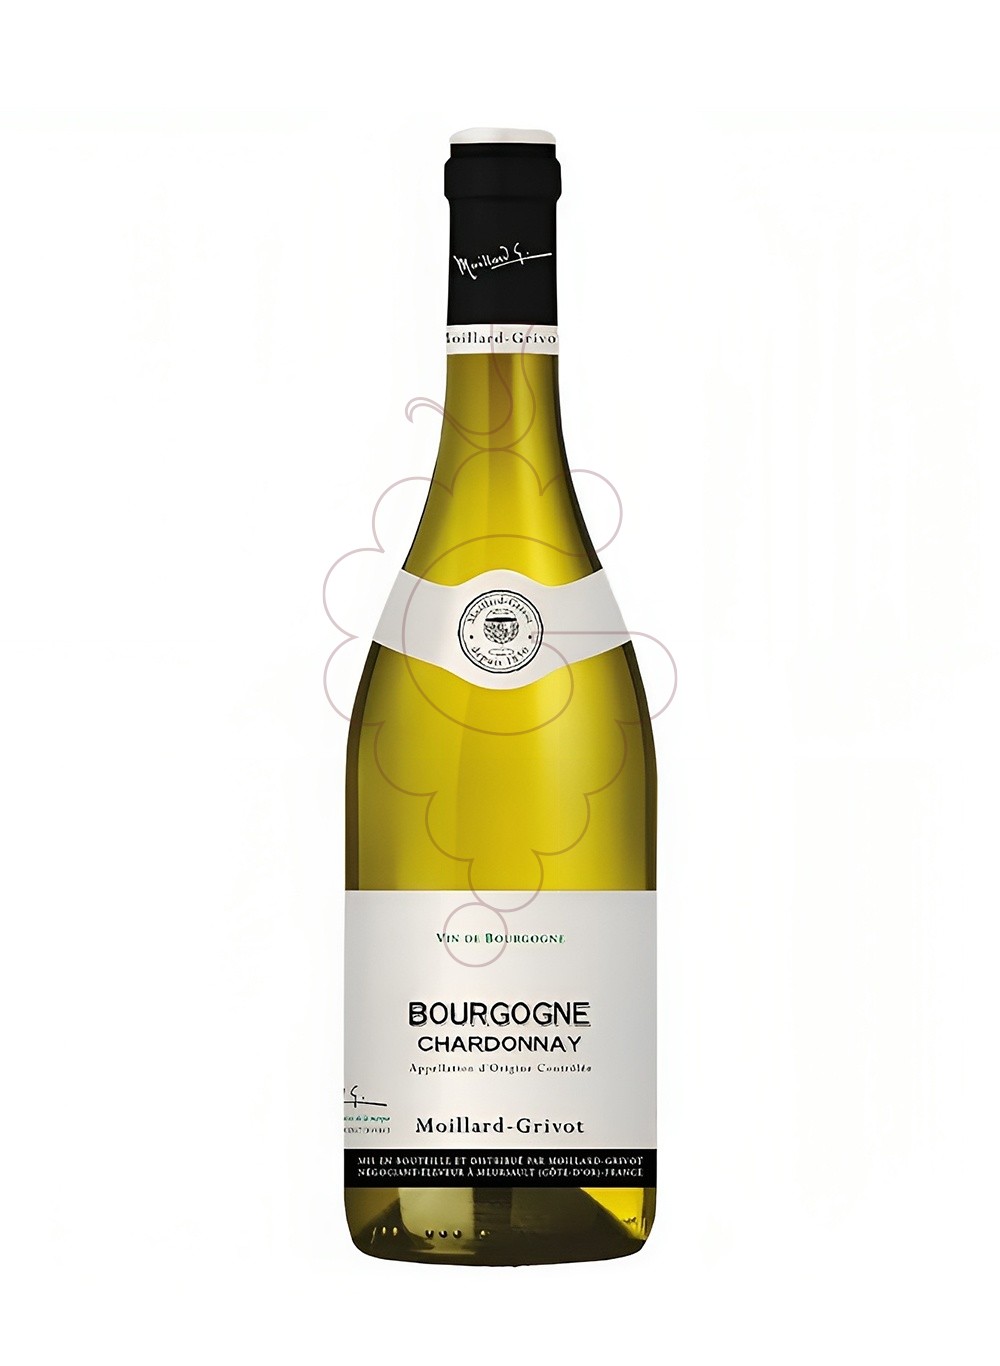 Foto Moillard-Grivot Chardonnay vino blanco